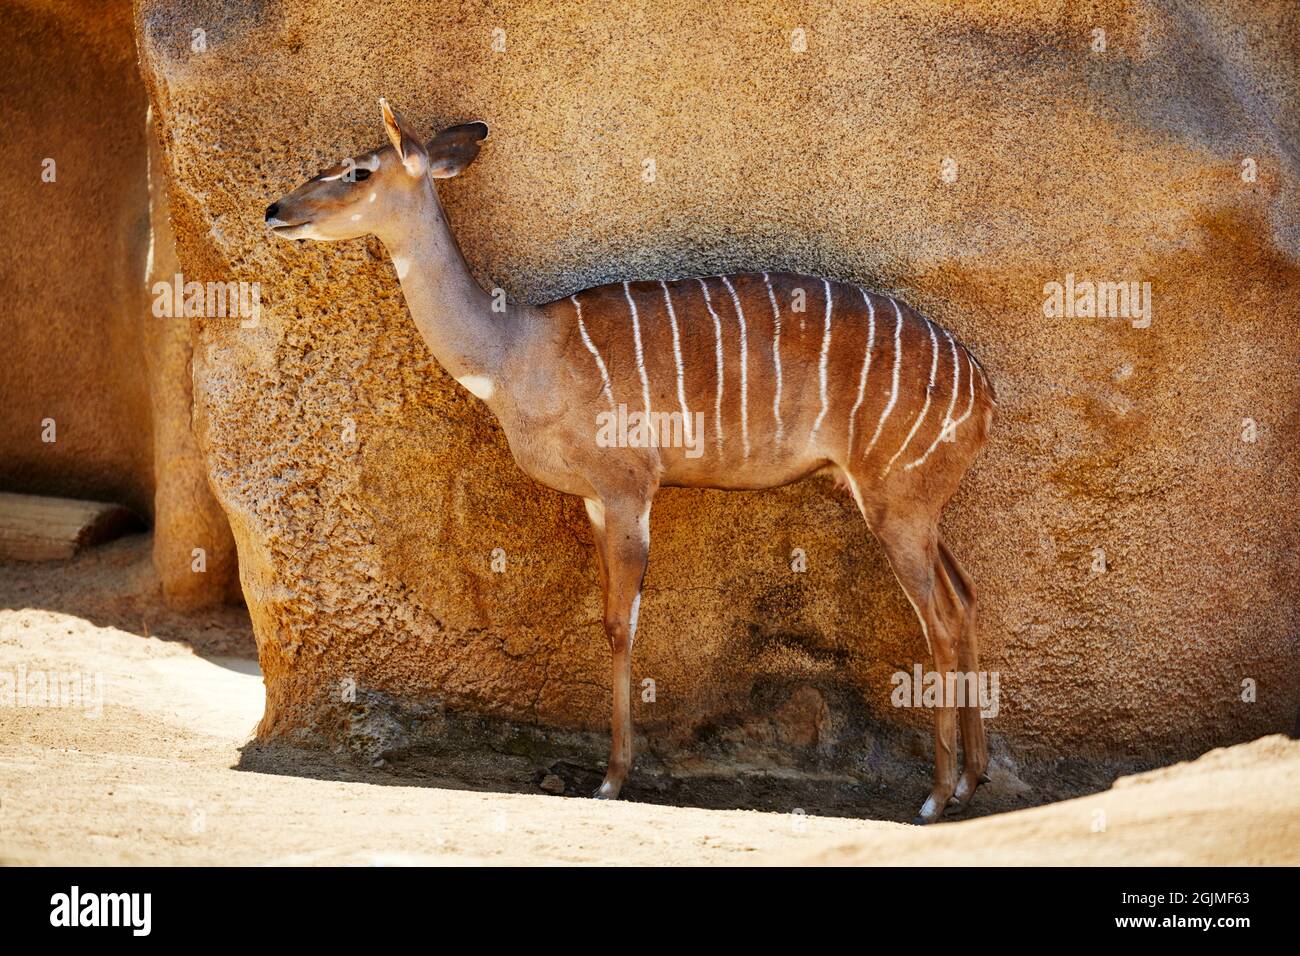 Ein kleiner Kudu in Gefangenschaft, der gegen die Wand steht, um im Schatten zu stehen Stockfoto